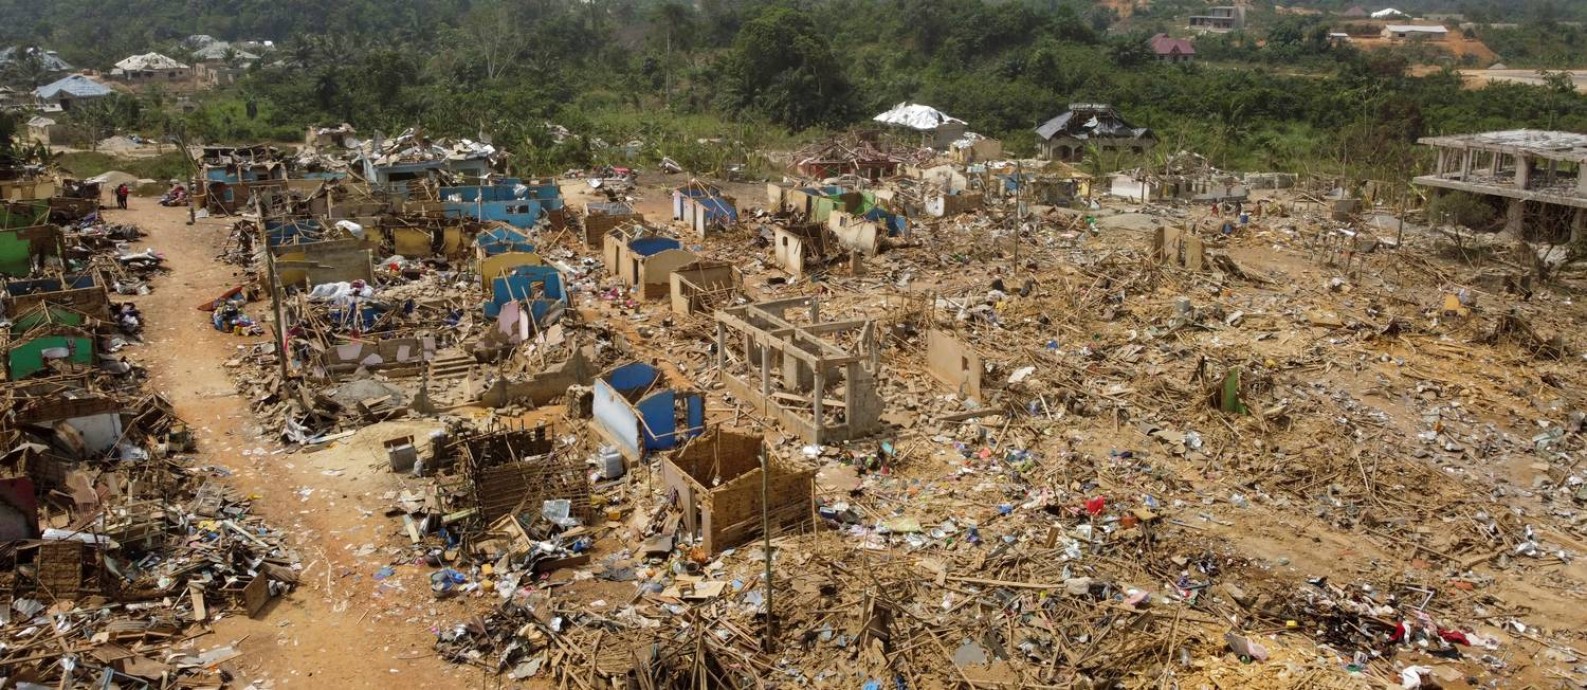 Imagem aérea mostra casas destruídas após a explosão de um caminhão em uma comunidade rural em Gana Foto: Cooper Inven / Reuters